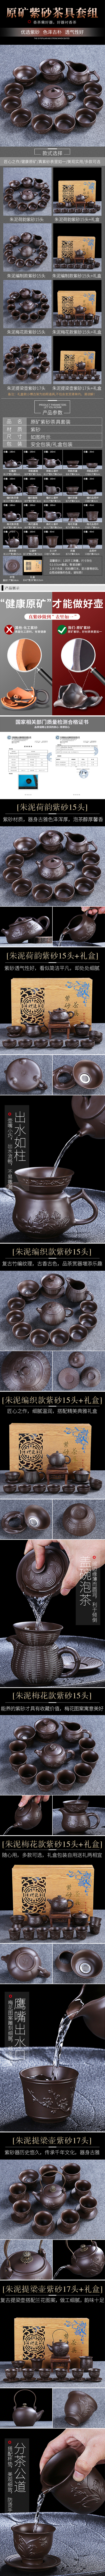 淘宝美工糖豆古典复古风茶杯茶壶家庭日用品详情页作品